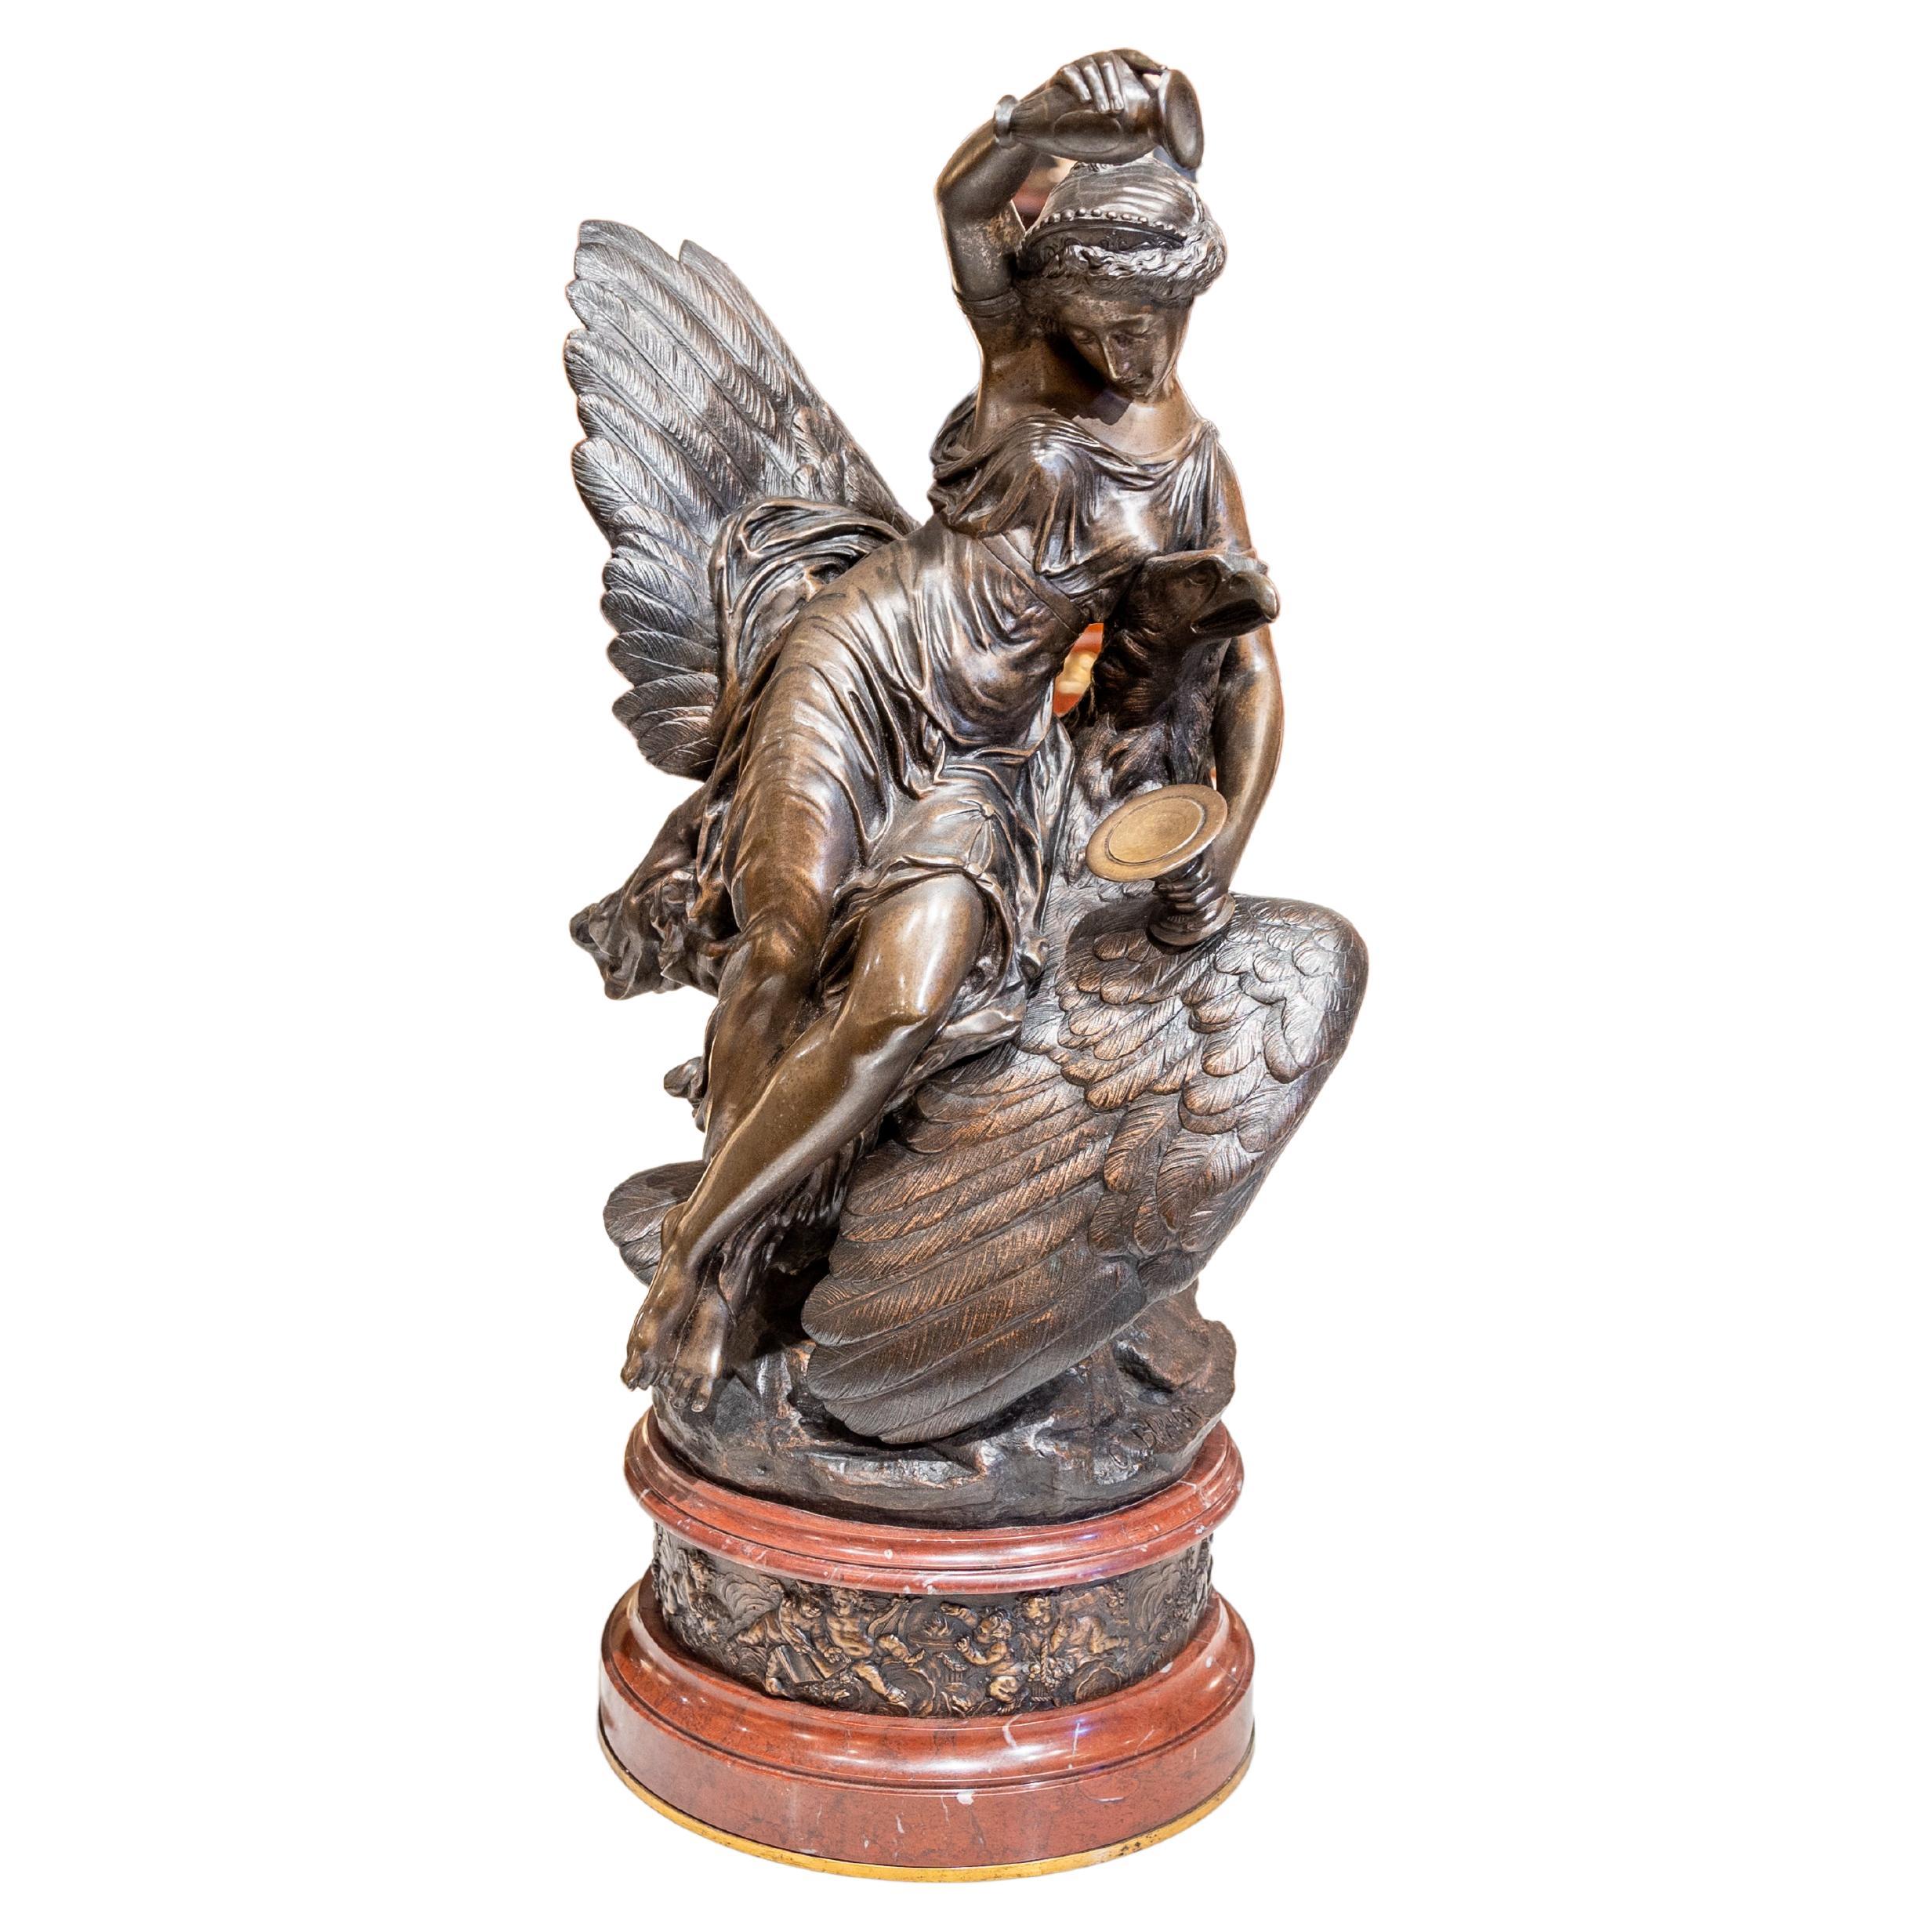 Magnifique sculpture en bronze patiné du 19ème siècle représentant une femme sur un aigle